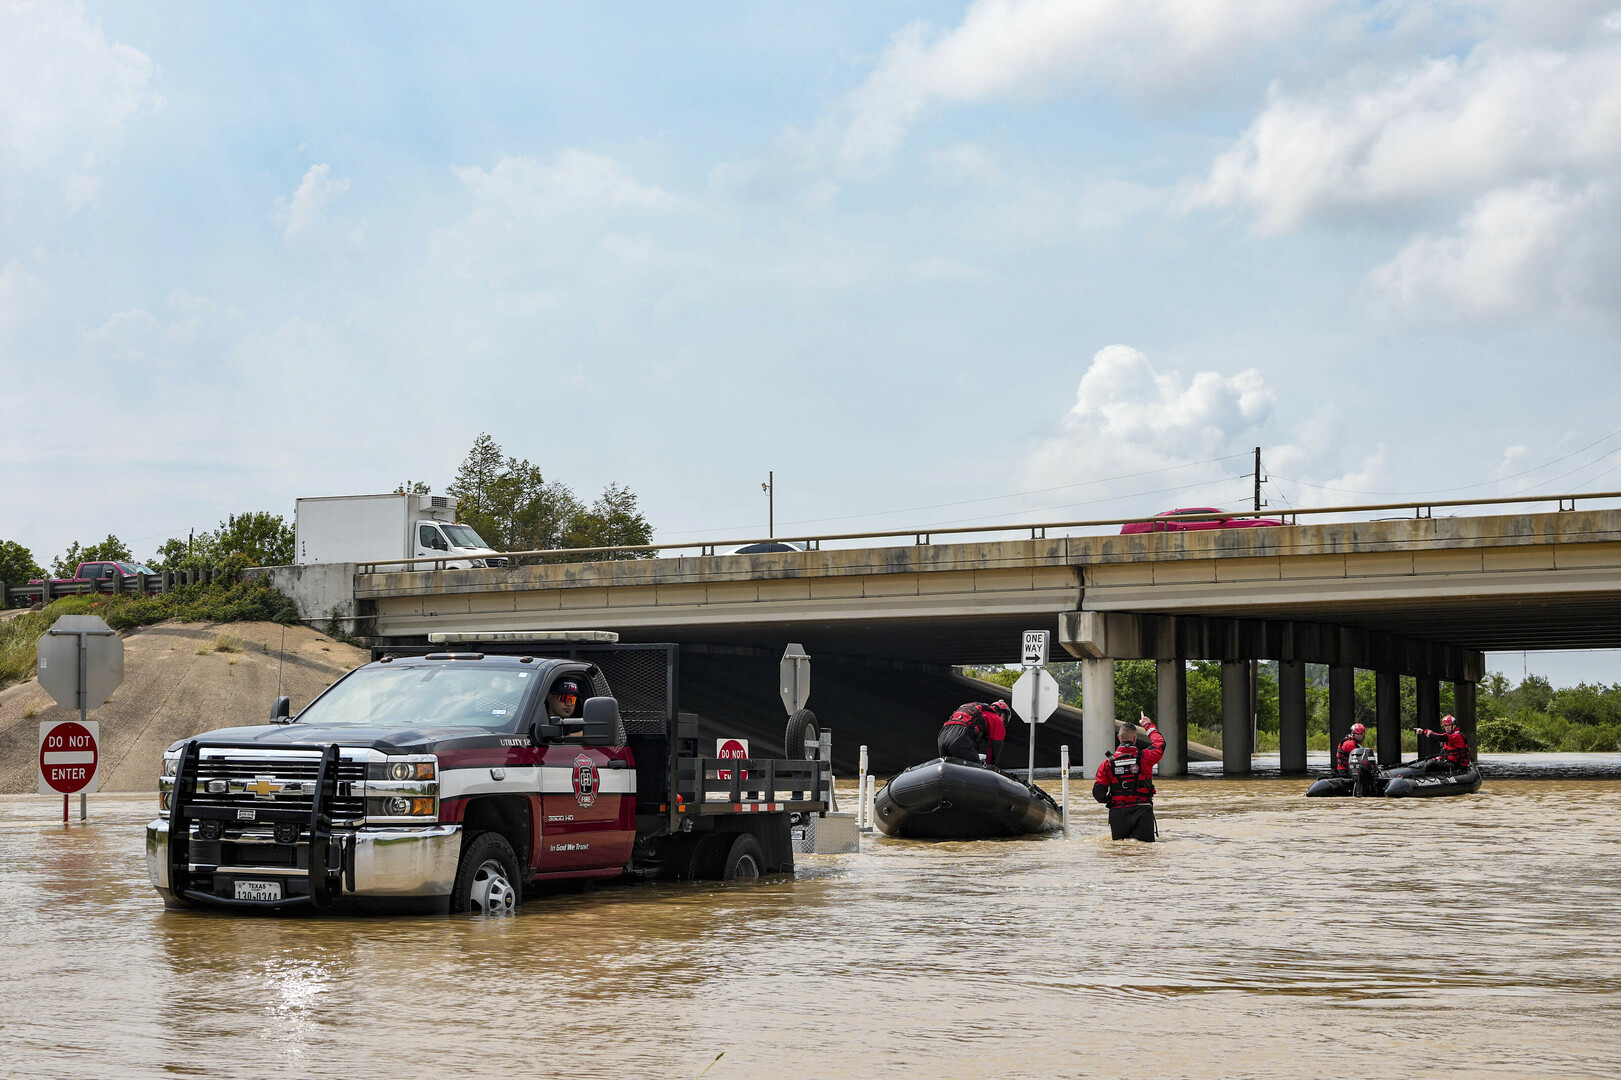 فيضان يجتاح مناطق واسعة في تكساس وسط توقعات بمزيد من الأمطار (صور)